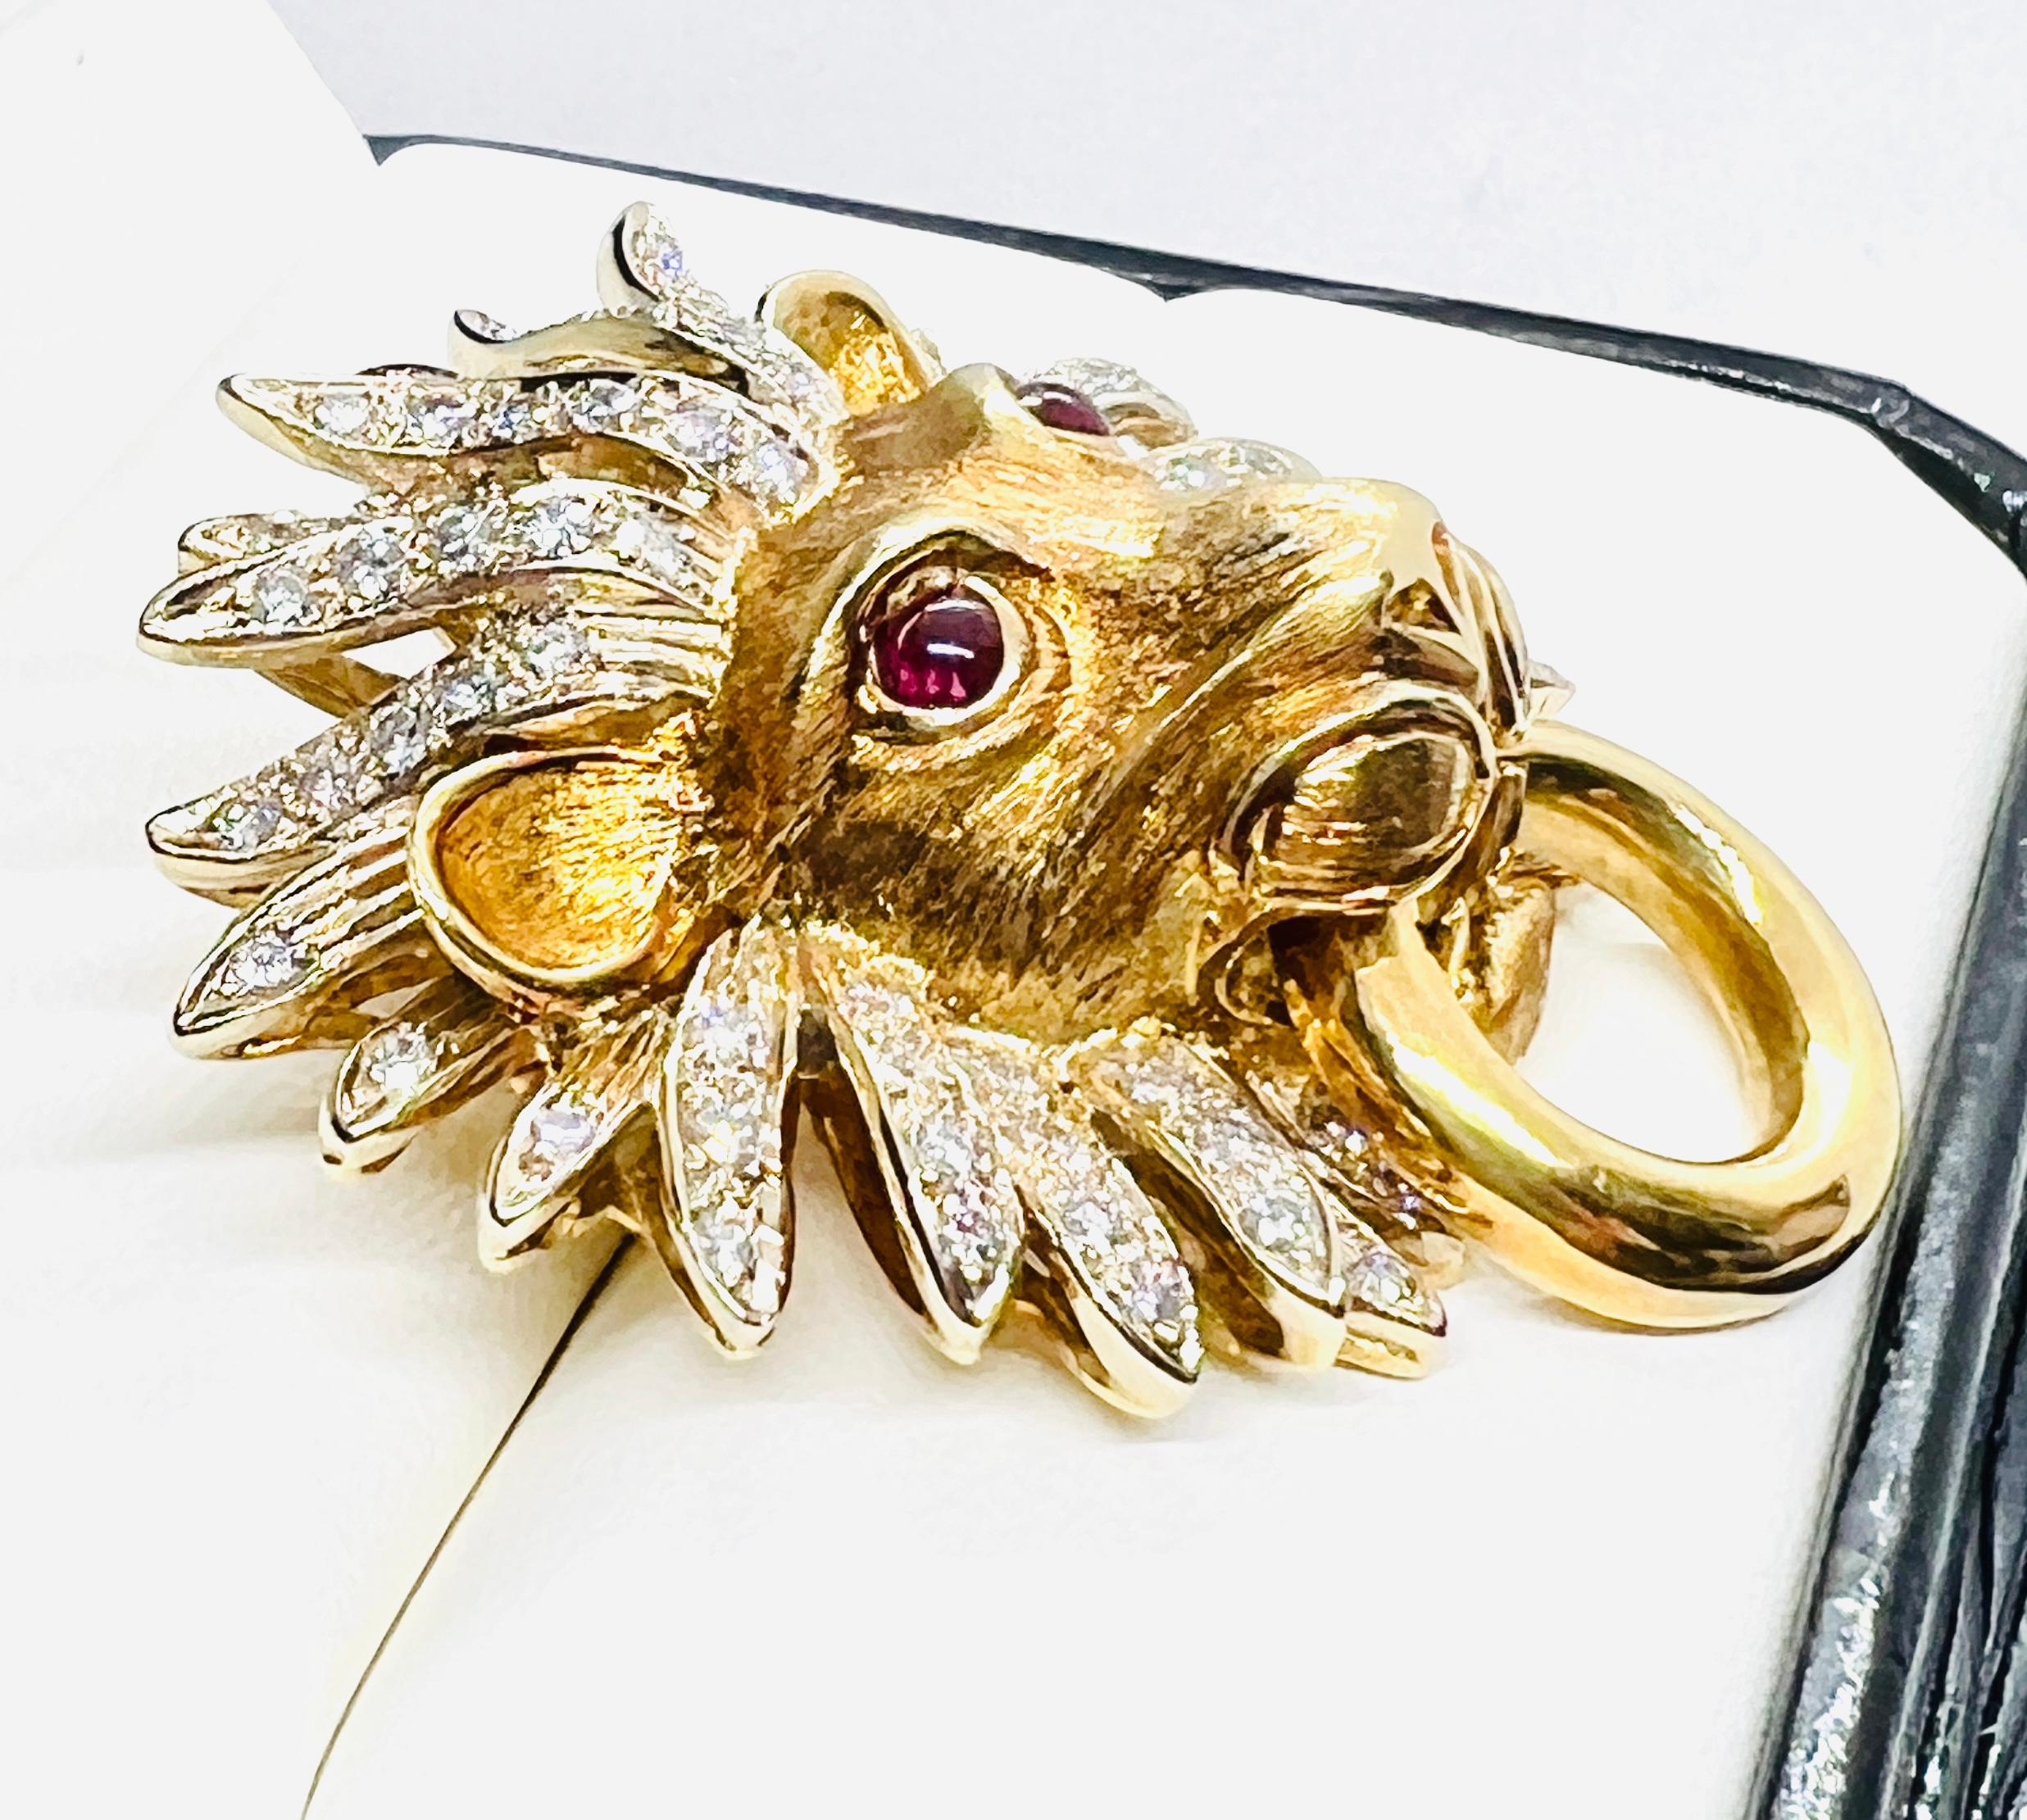 Art Deco Adler 18k Yellow Gold, Diamond & Ruby Lionshead Doorknocker Enhancer Pendant For Sale